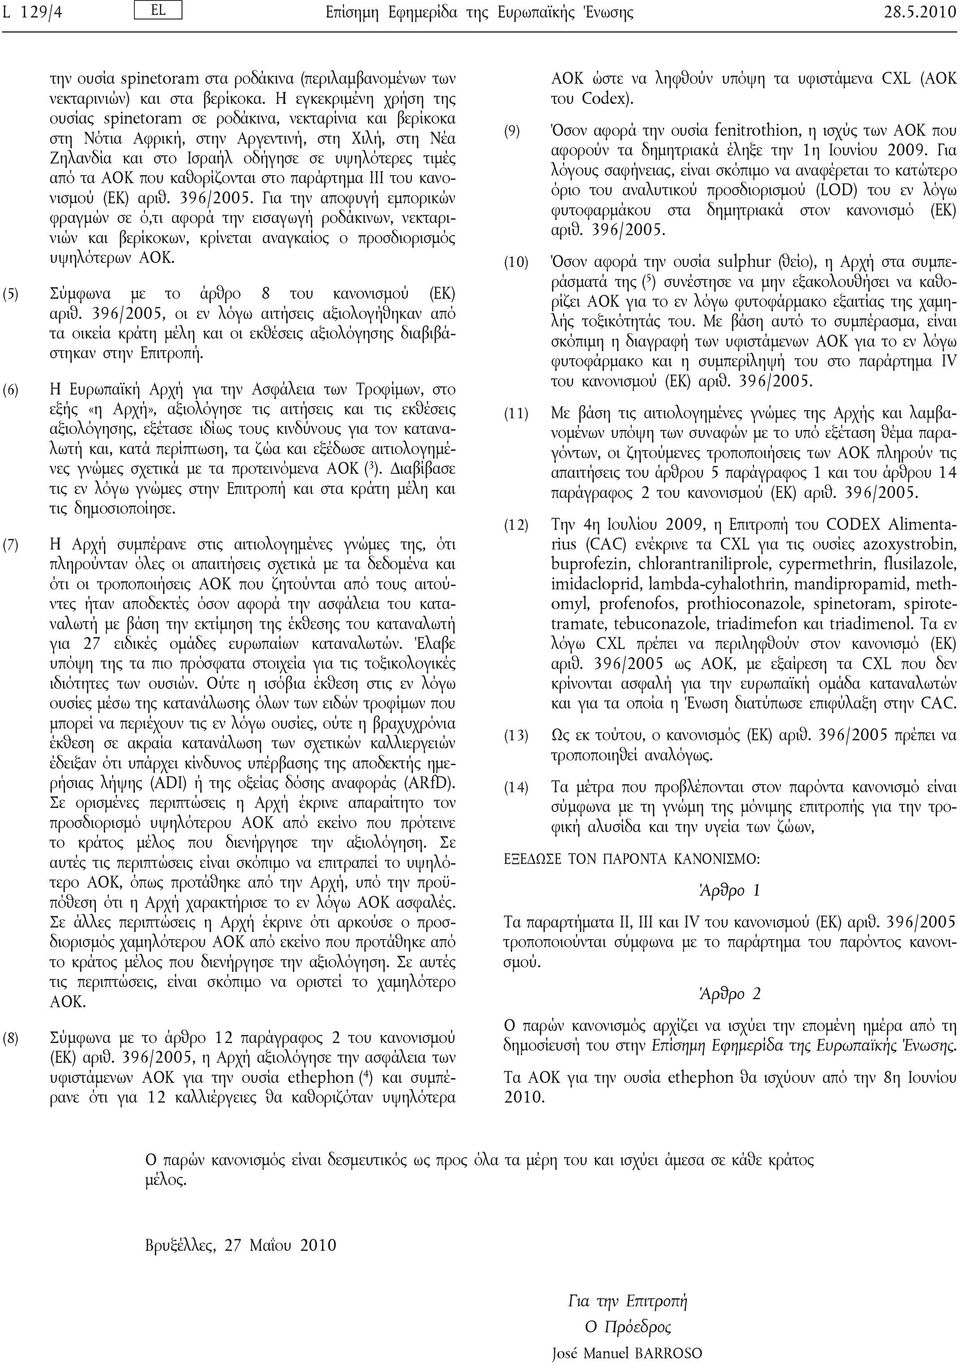 καθορίζονται στο παράρτημα III του κανονισμού (ΕΚ) αριθ. 396/2005.